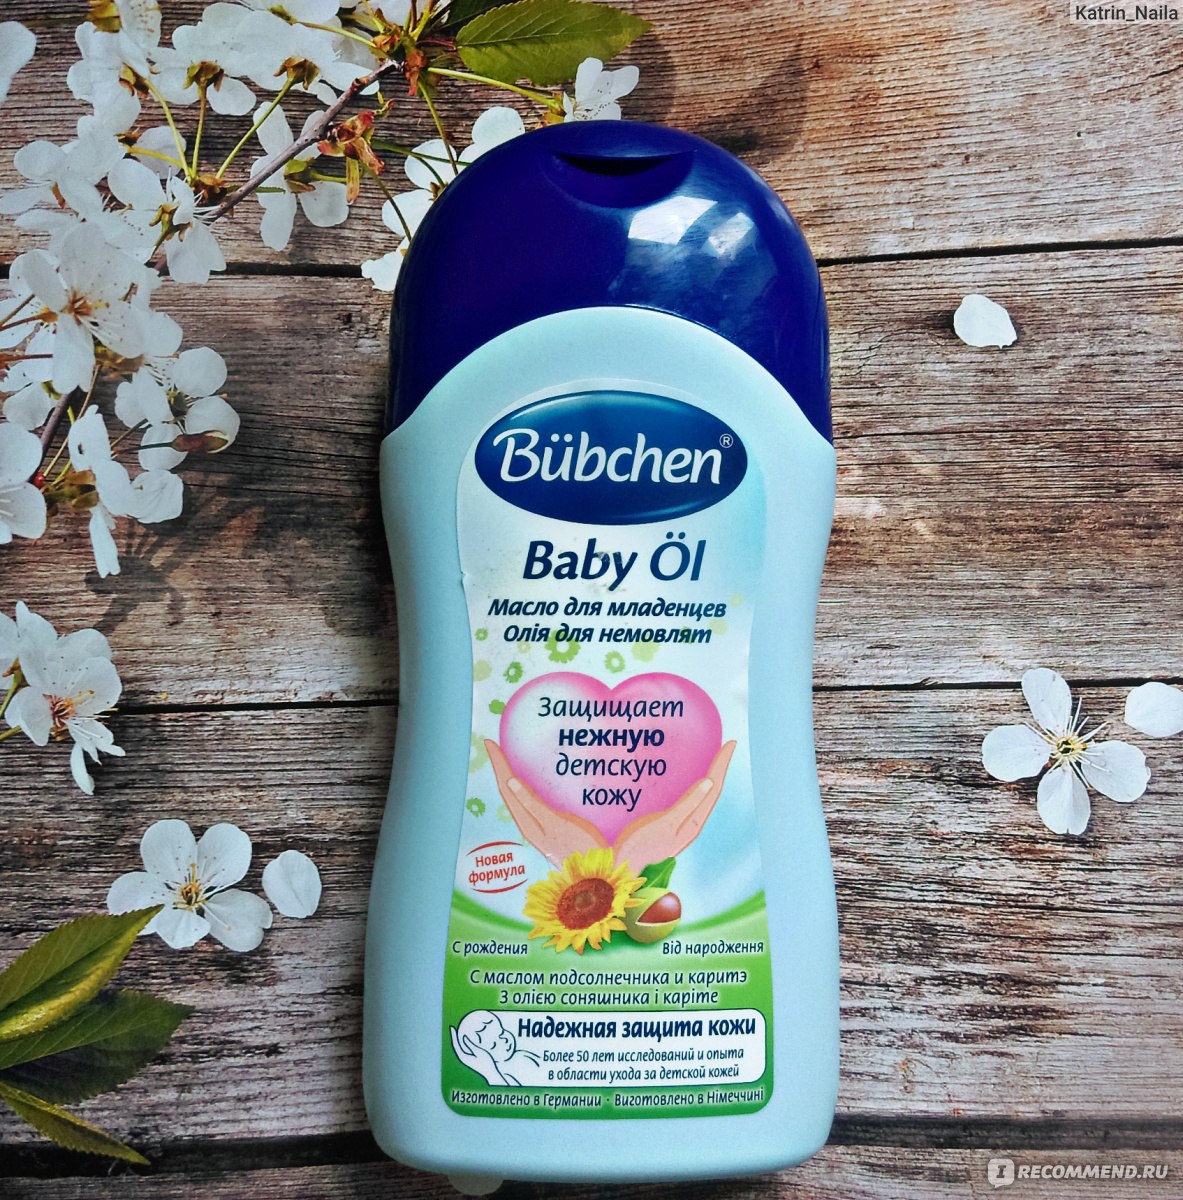 Bubchen для купания. Bubchen масло для младенцев. Масло Bubchen для младенцев гипоаллергенный. Bübchen Baby ol масло для младенцев. Bubchen реклама.